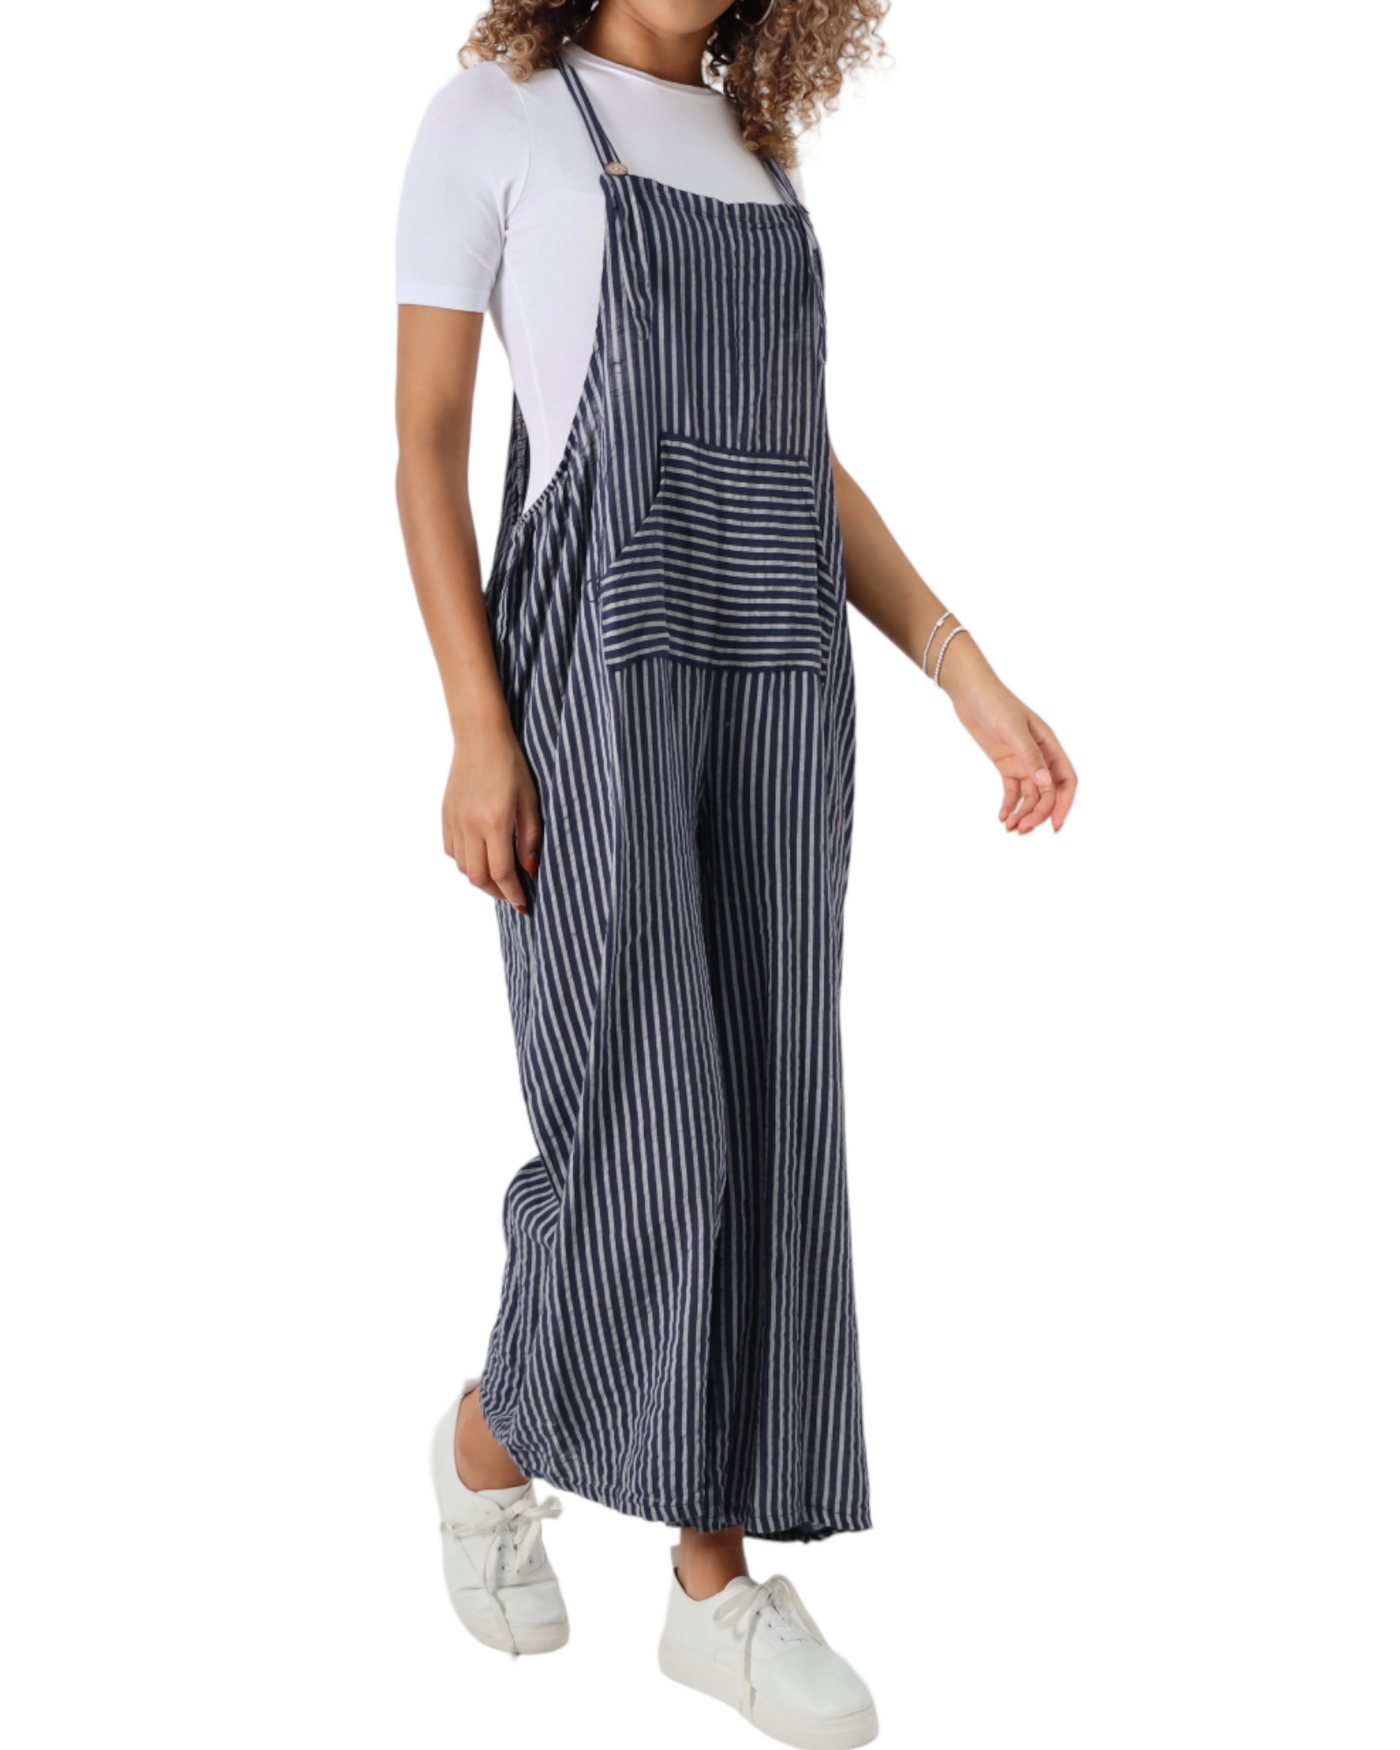 Stripe Cotton Jumpsuits